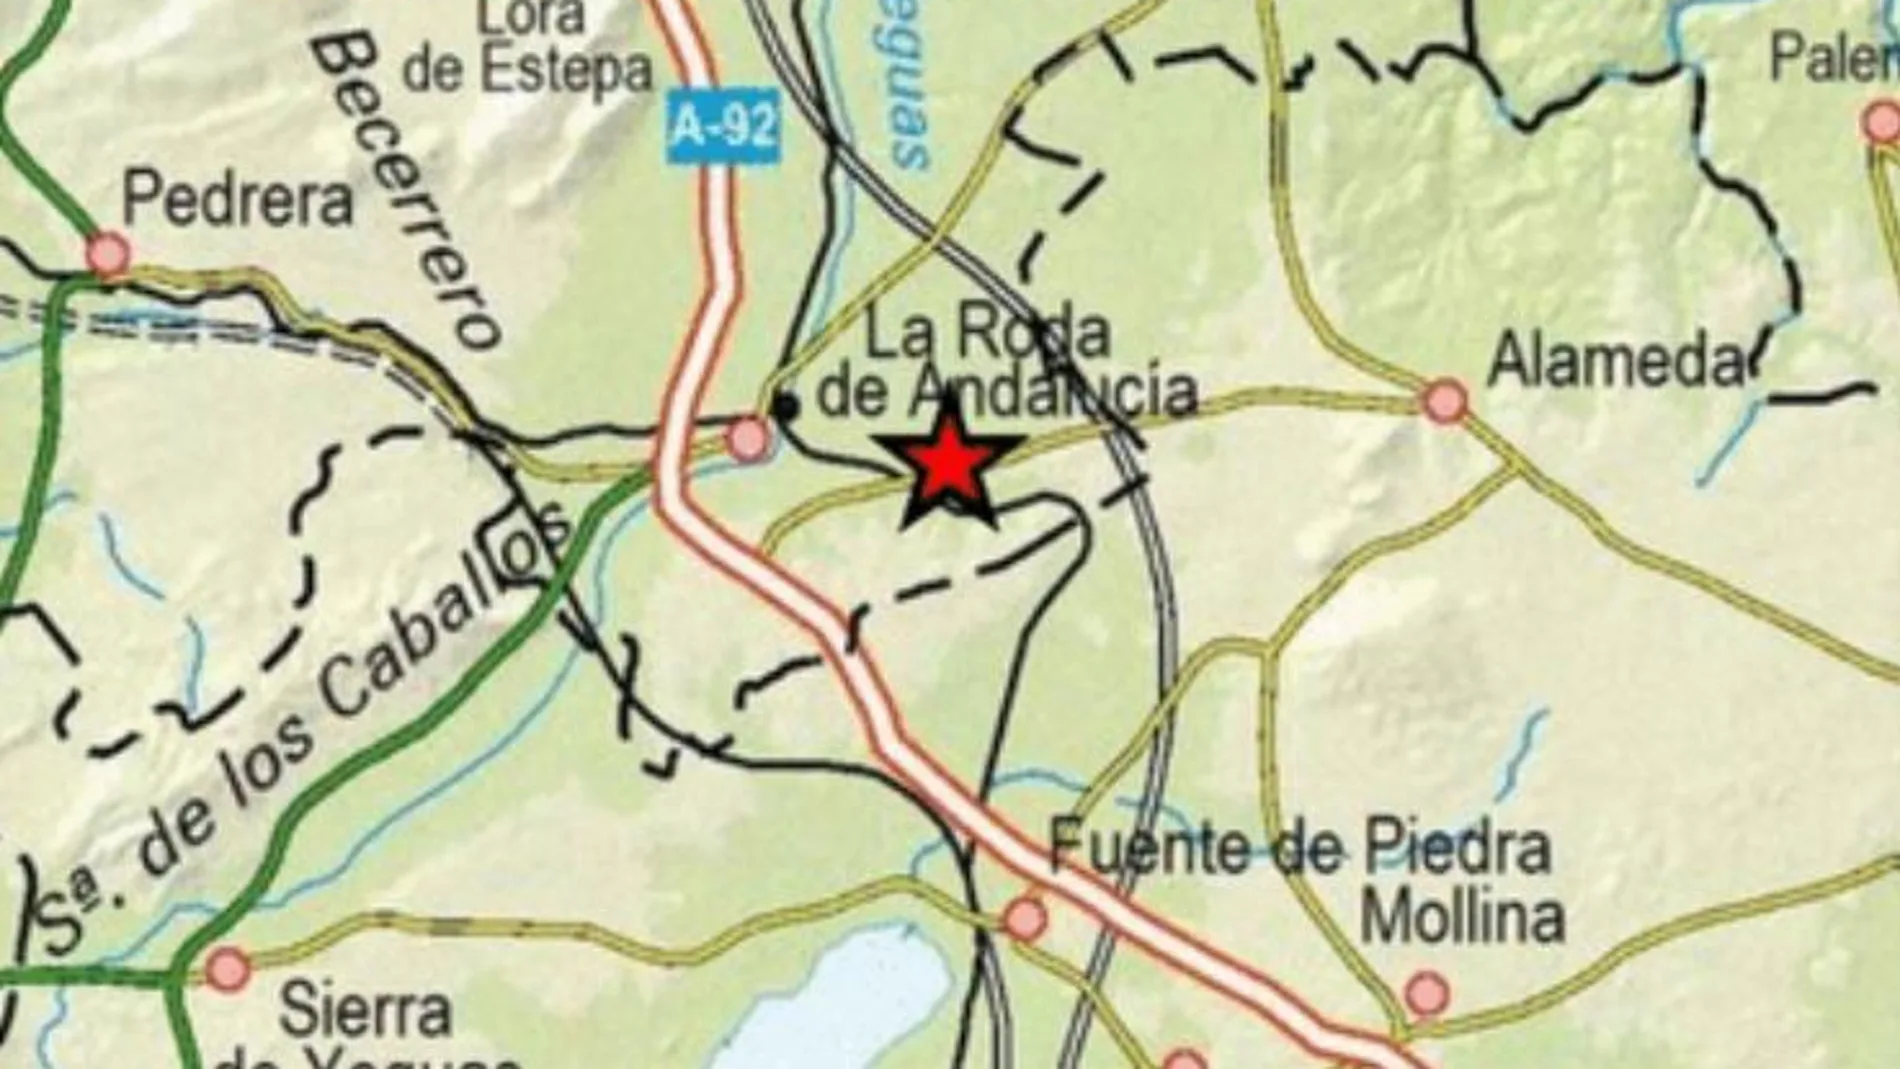 El epicentro del terremoto ha estado al este de La Roda de Andalucía (Sevilla)